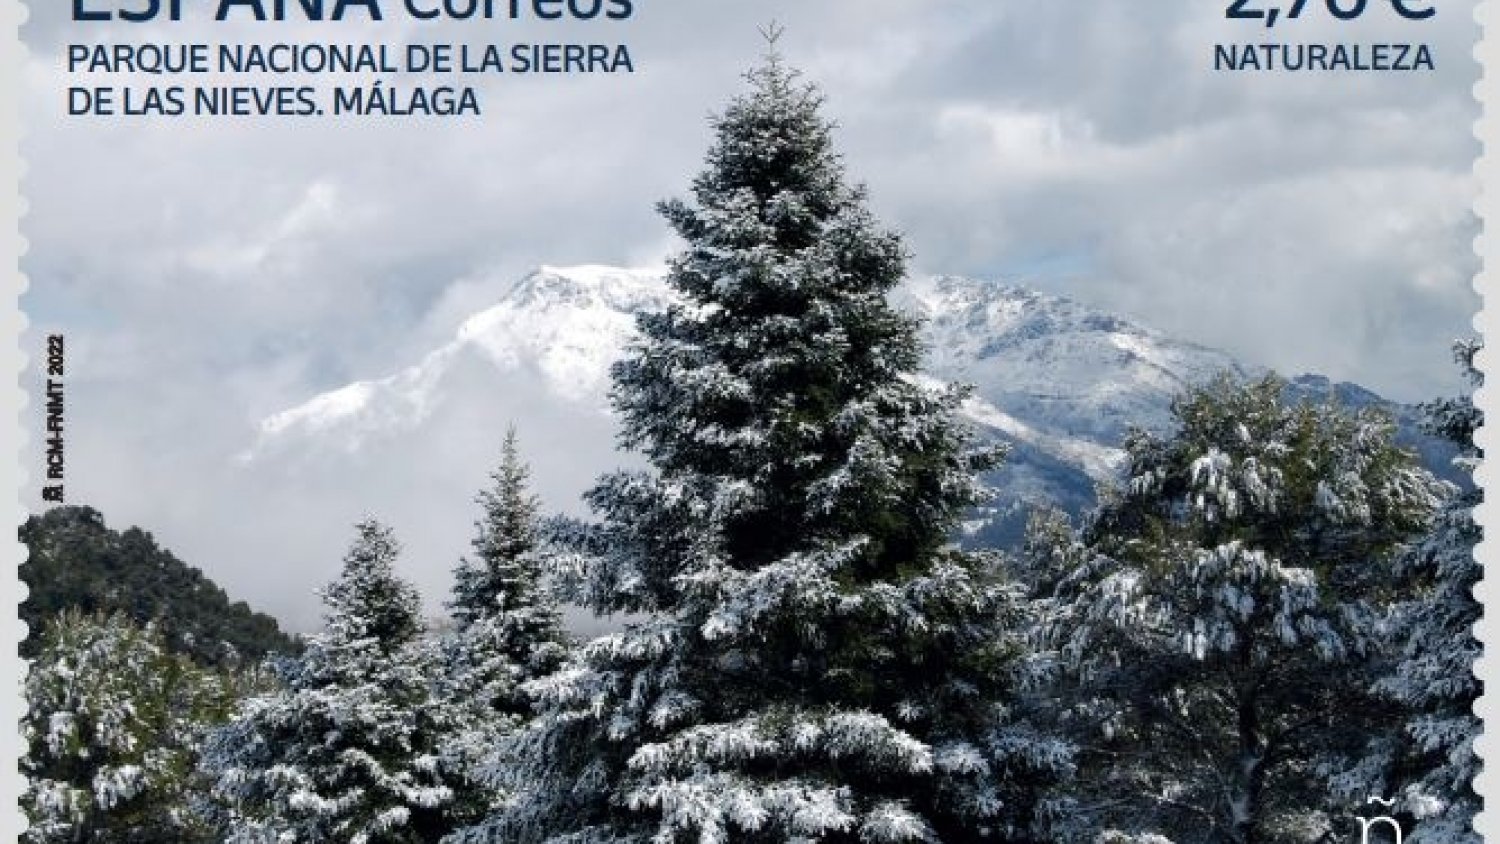 Correos lanza una colección de sellos donde aparece la Sierra de las Nieves de Málaga